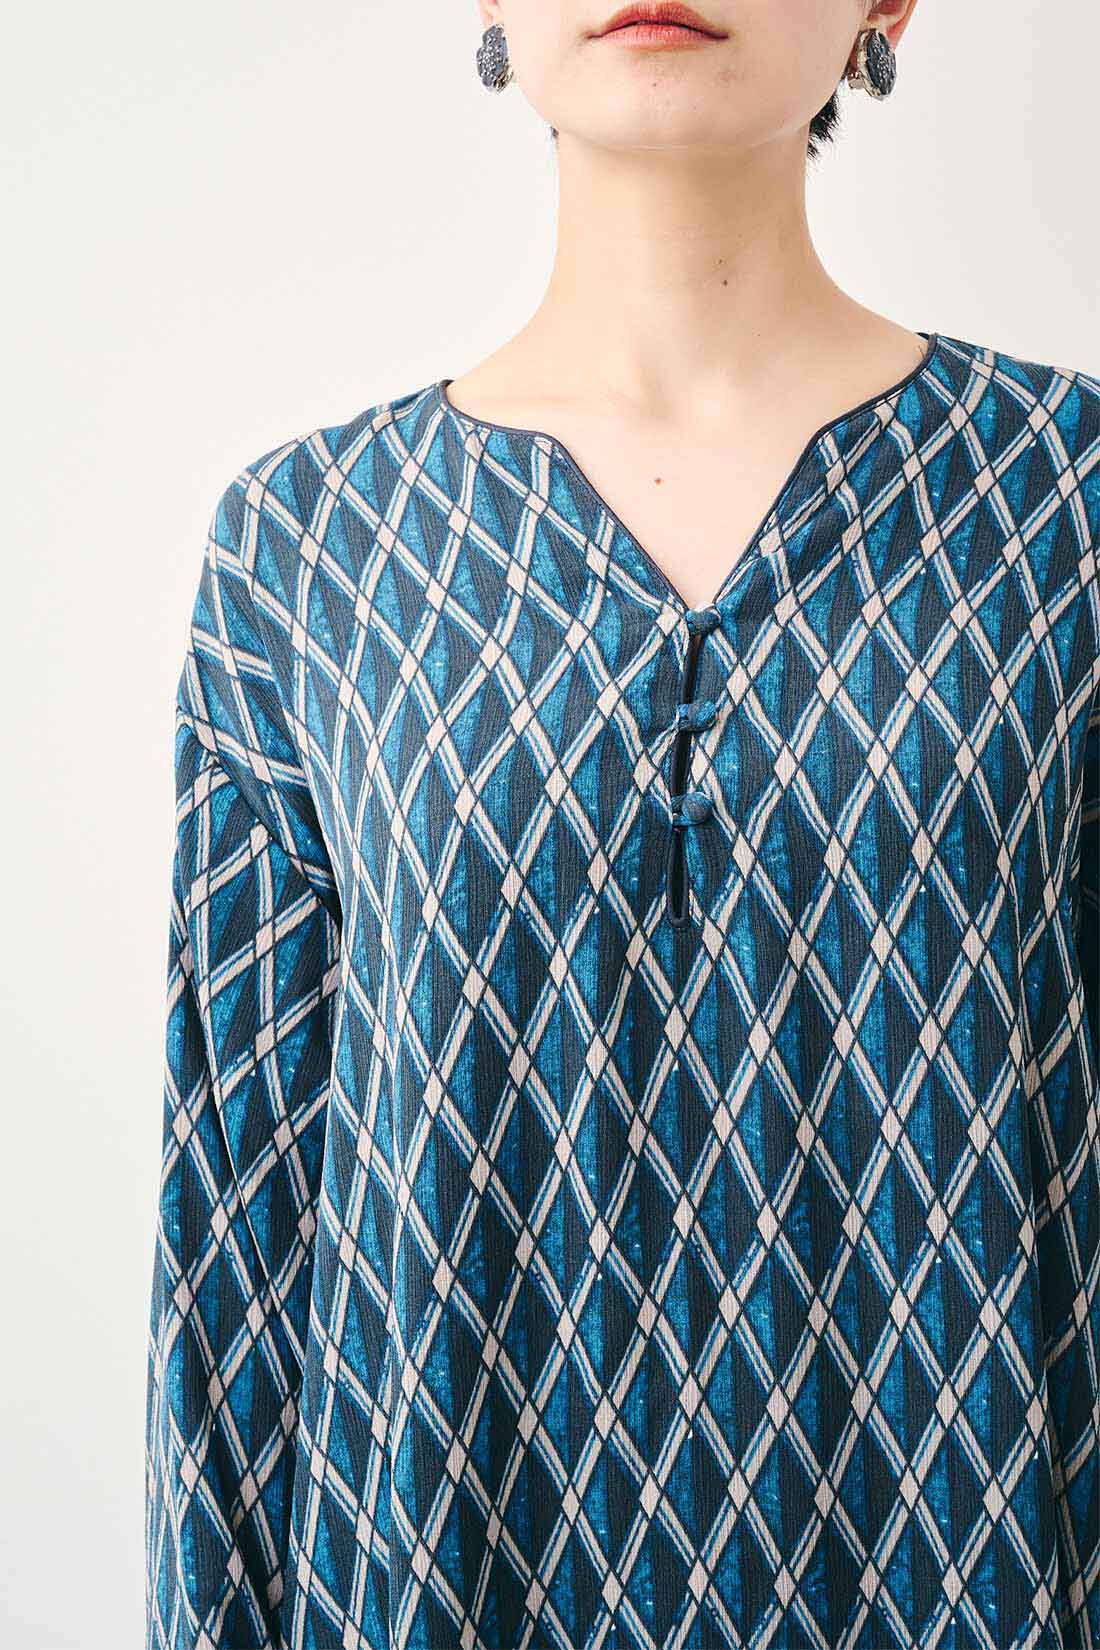 Real Stock|MEDE19F　ミュルーズモダン〈「ミュルーズ染織美術館」アーカイブコレクション〉 ヴィンテージパターン プリントカフタンワンピース〈ブルー〉|衿端や袖に配したサテンのパイピングが柄を引き締めます。くるみボタンもアクセントに。